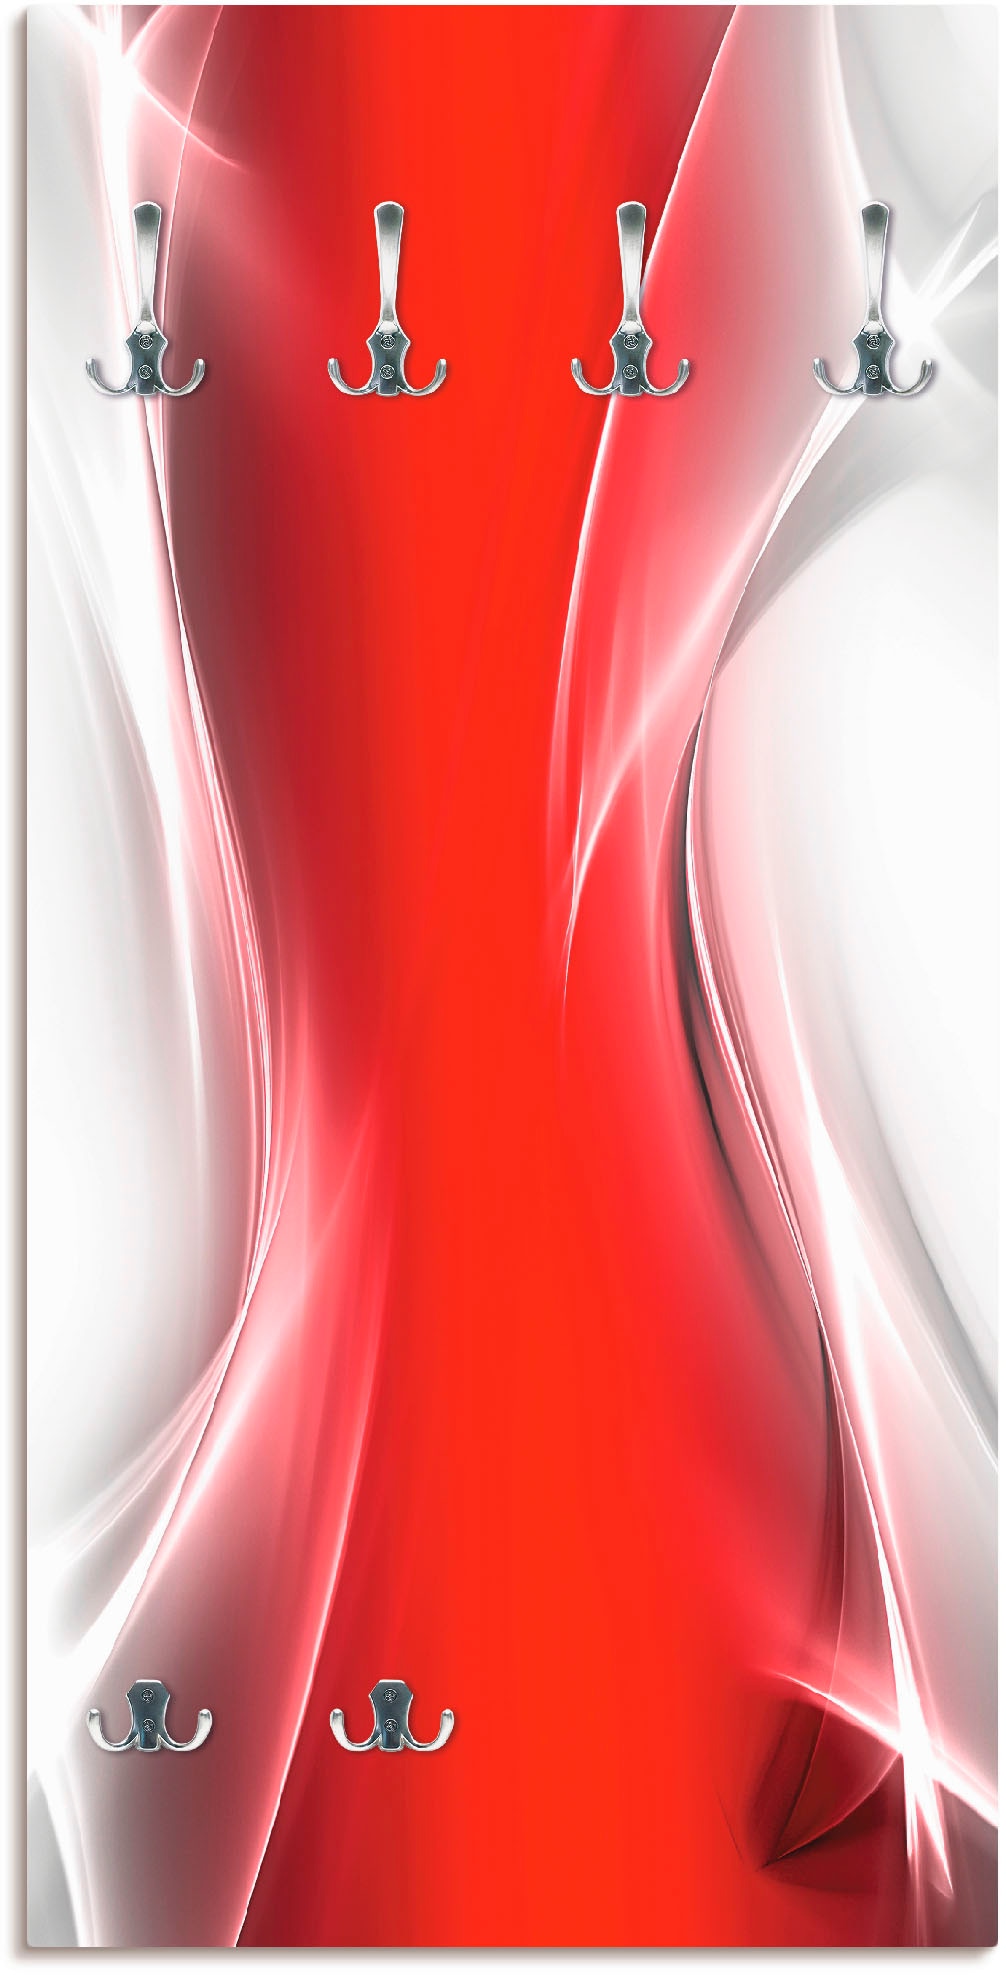 Artland Garderobenleiste »Kreatives Element Rot für Ihr Art-Design«, teilmontiert